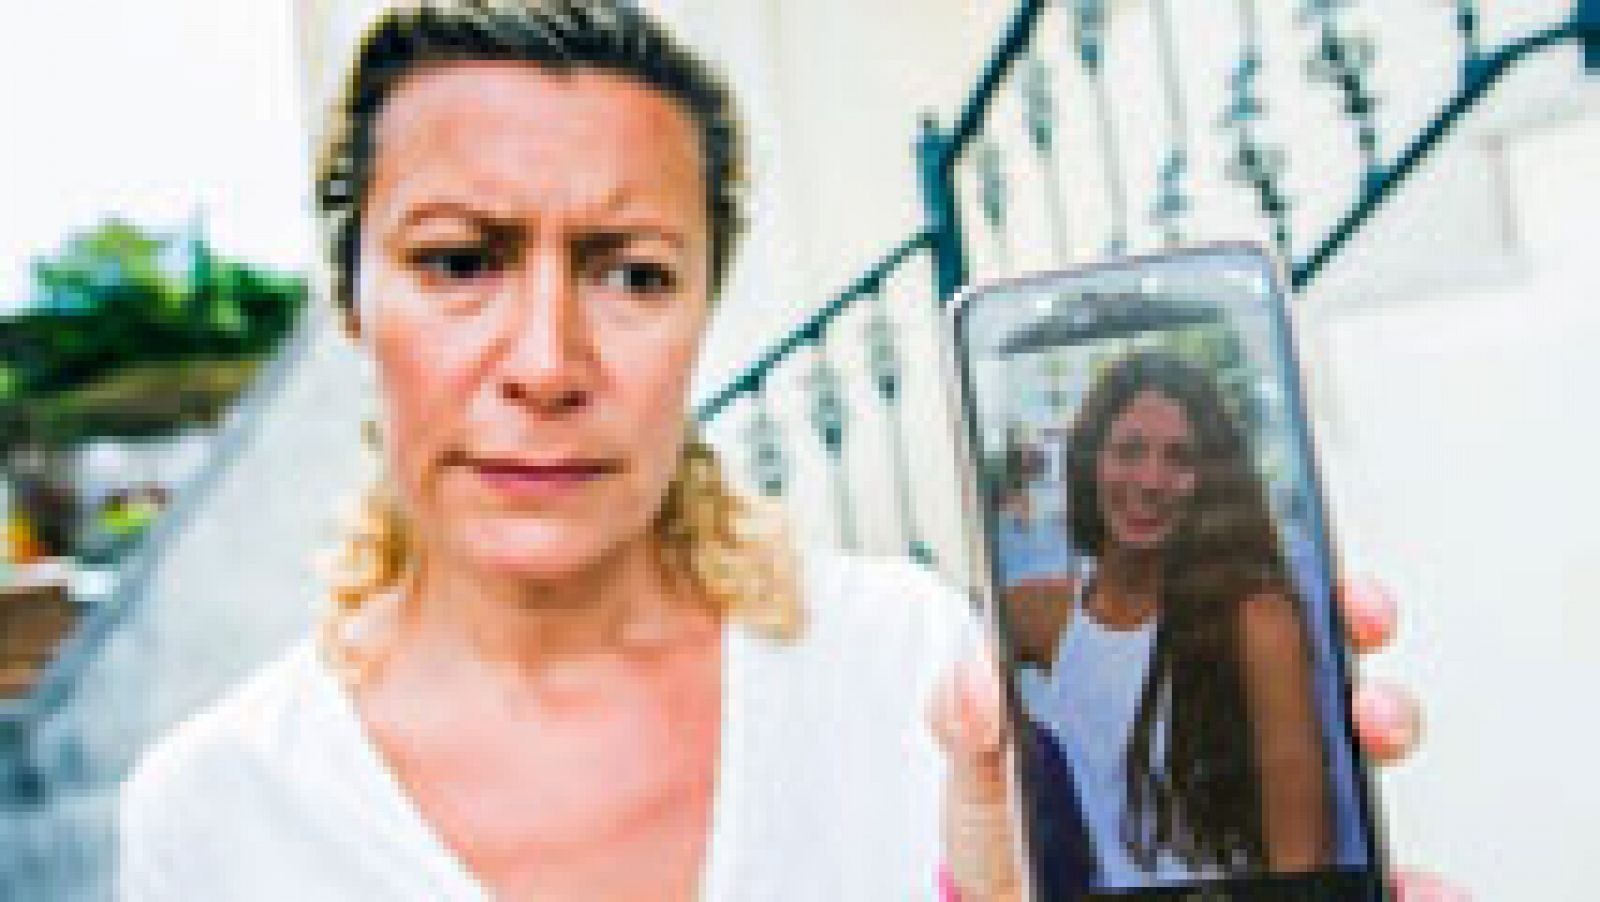 Telediario 1: La joven madrileña desaparecida en Galicia envió un mensaje a un amigo porque un hombre la seguía | RTVE Play